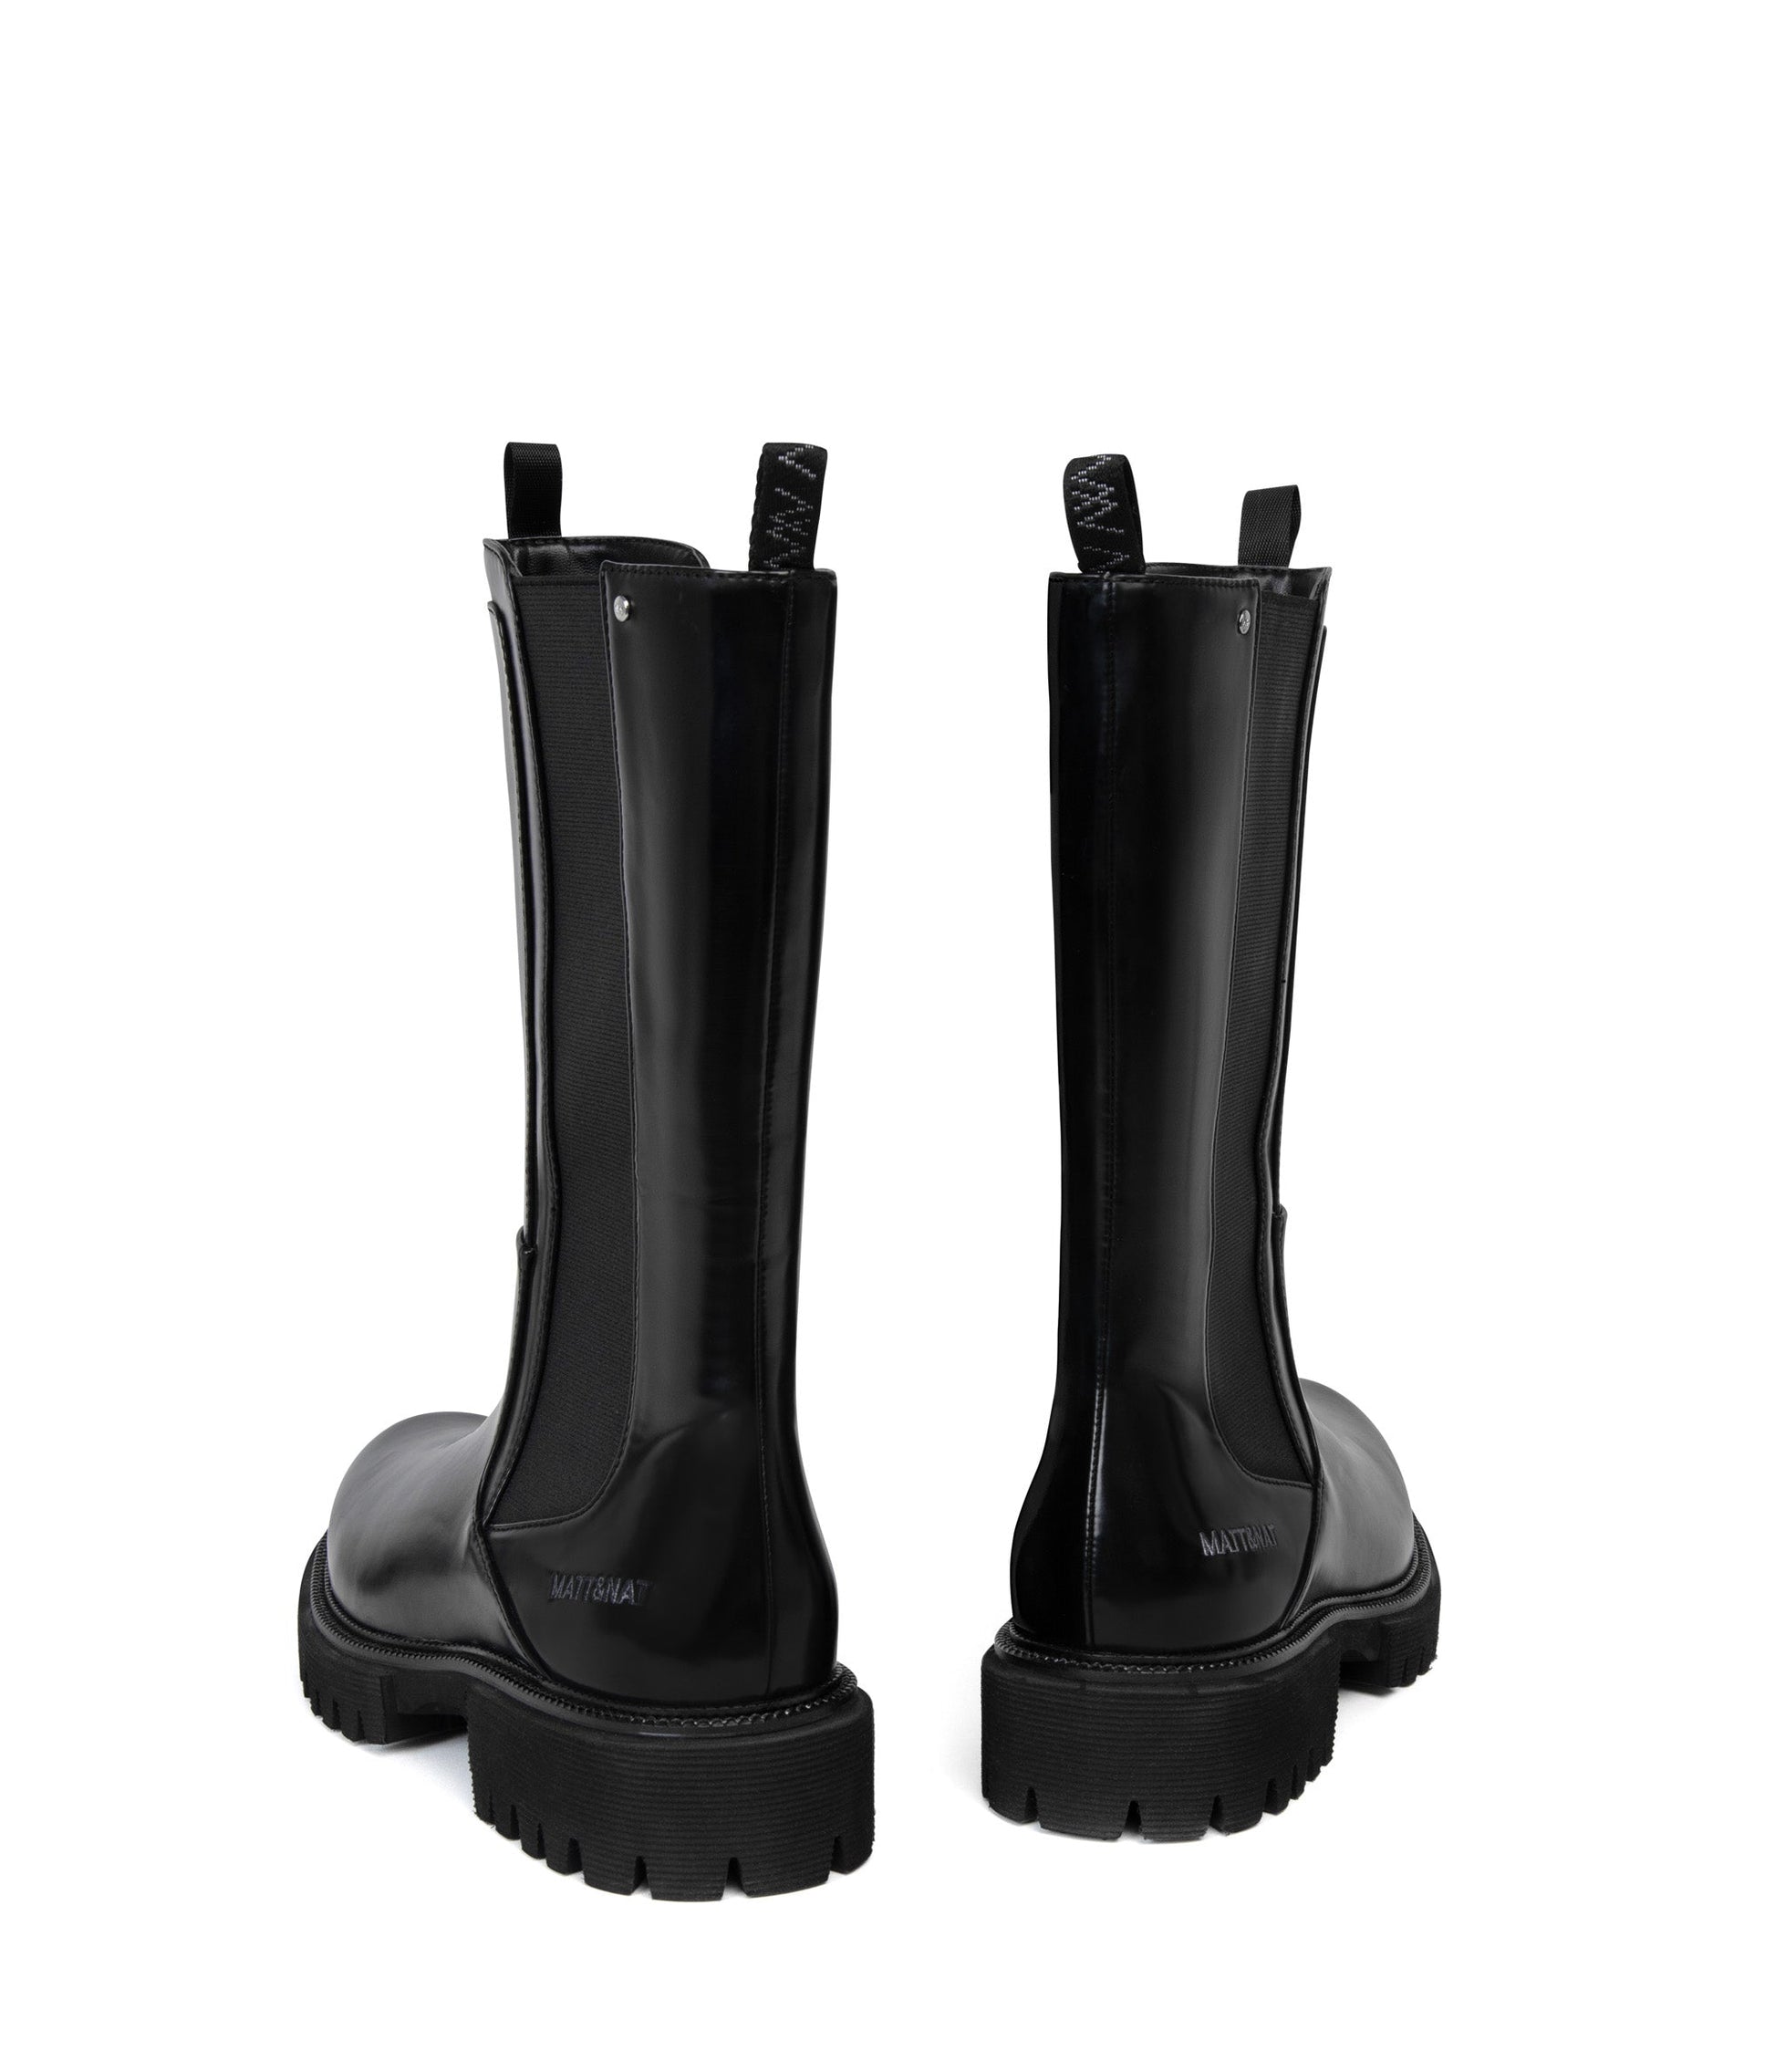 KRAUSE Men’s Vegan Chelsea Boots | Color: Black - variant::black